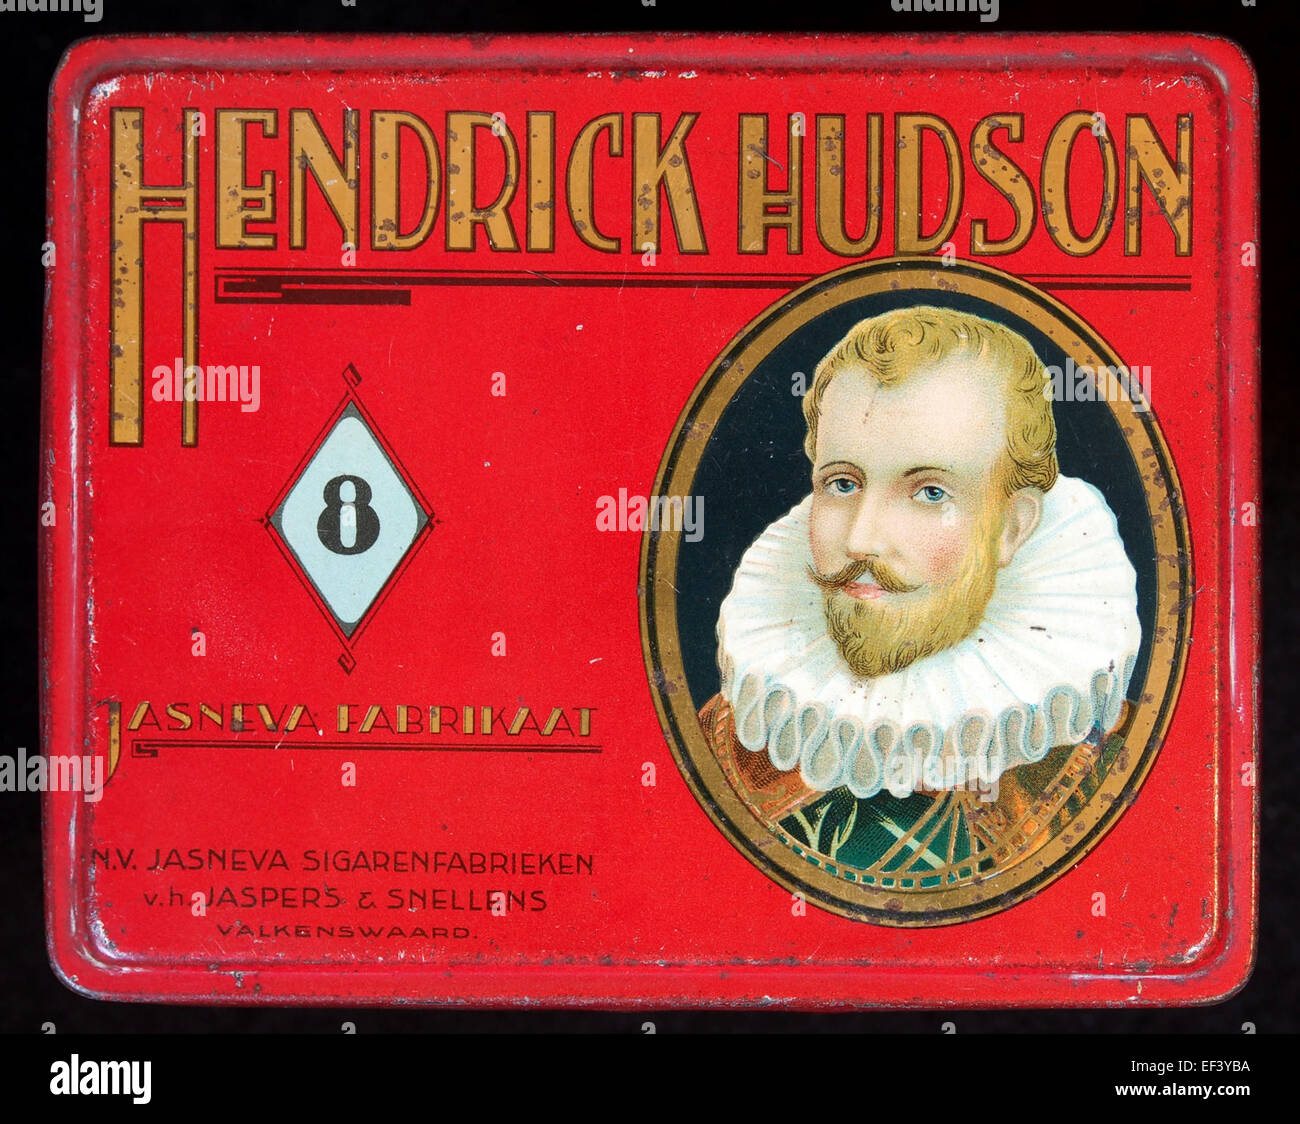 Hendricks Hudson sigarenblikje Foto Stock